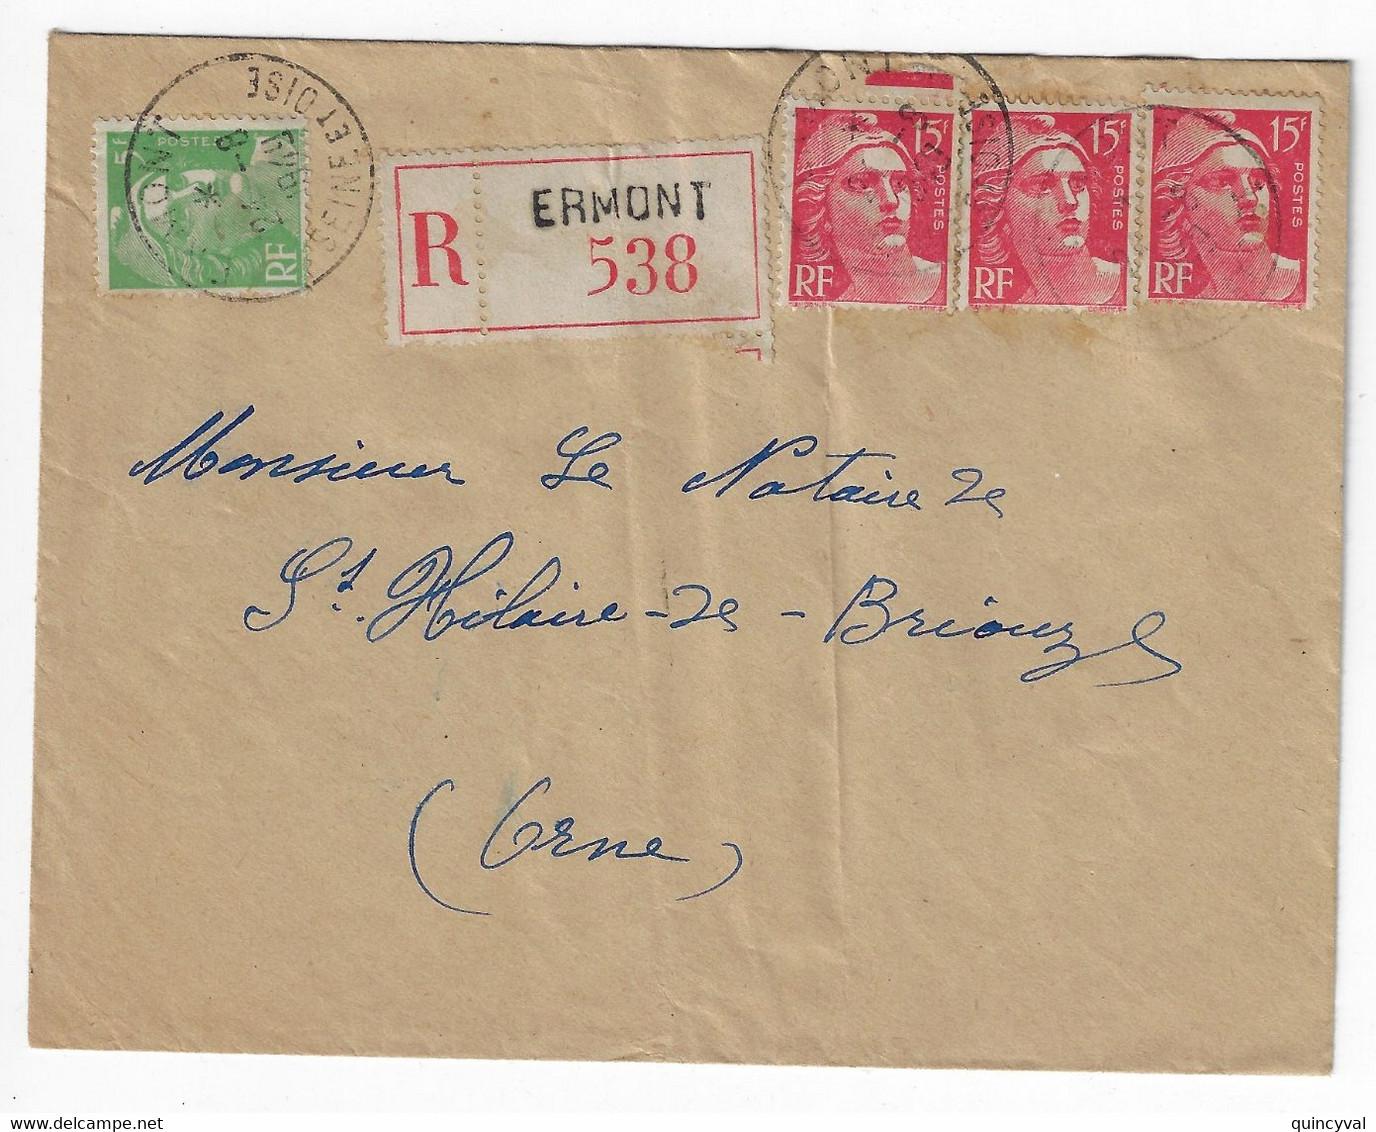 ERMONT Seine Et Oise Lettre Recommandée  5F Vert 15 F Gandon Etiquette Yv 813 809 Ob 24 8 1949 - Covers & Documents